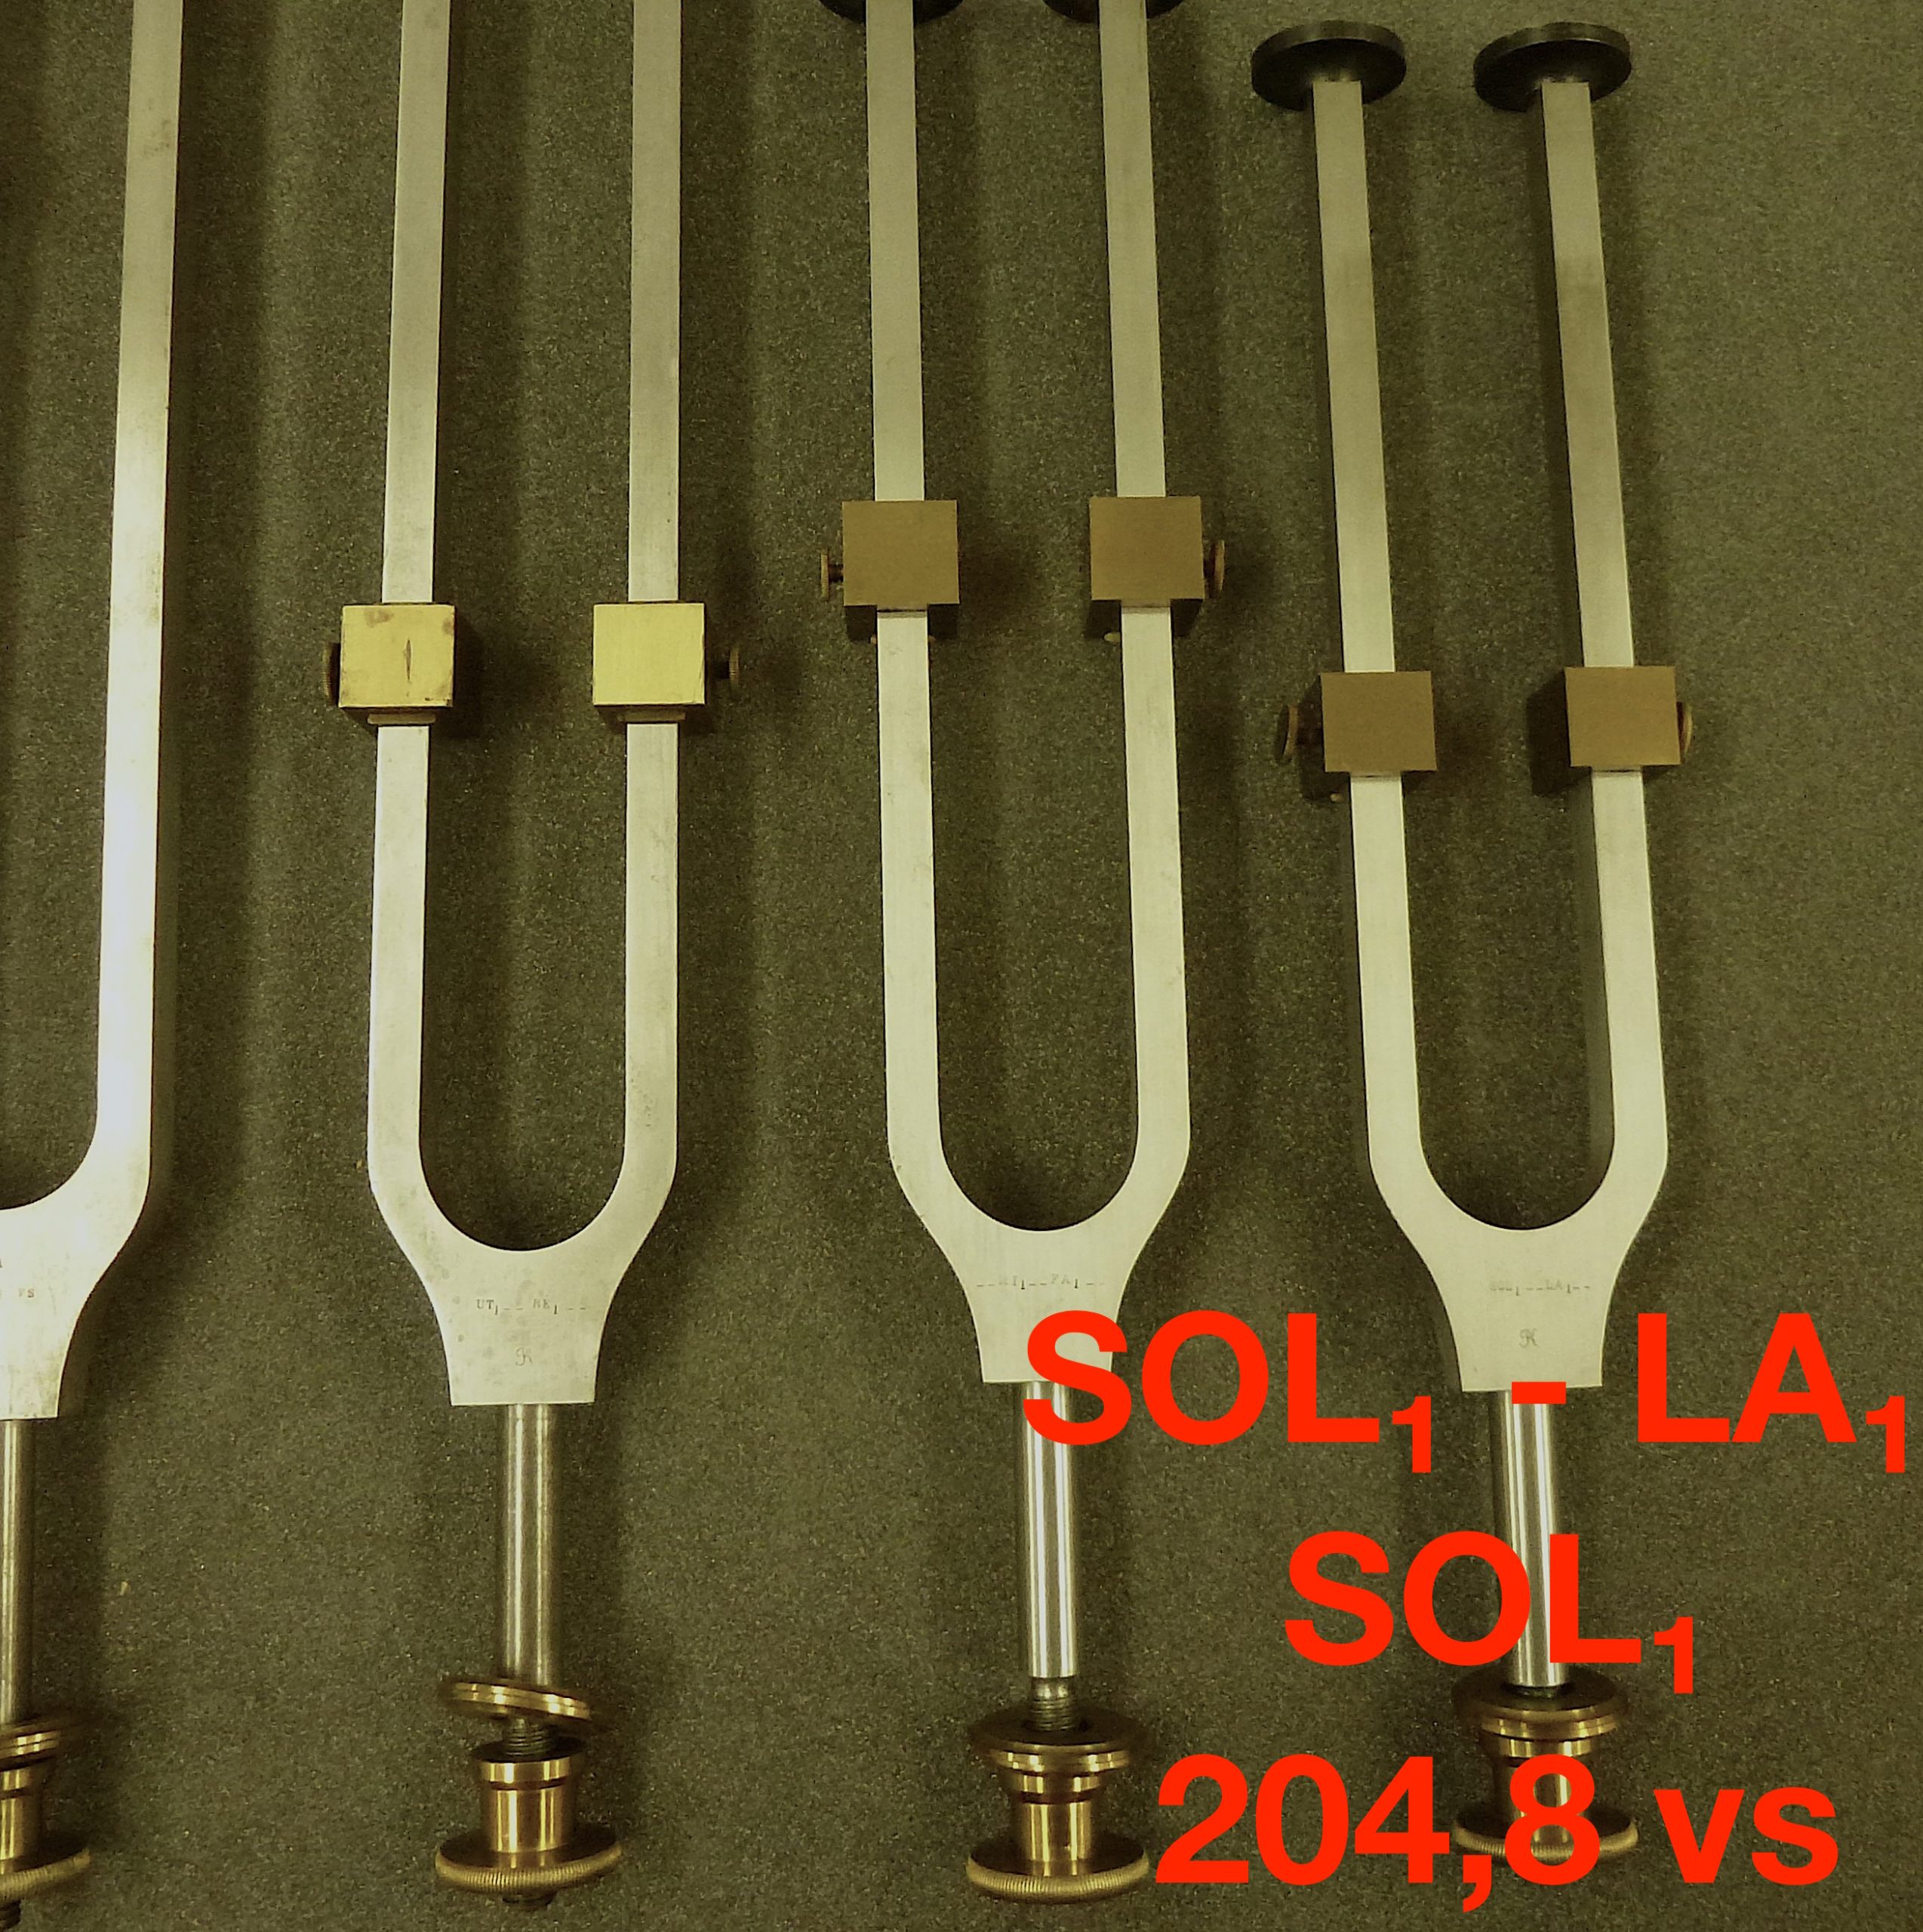 Tuning fork by Dr. R. König: SOL₁ - LA₁: SOL₁